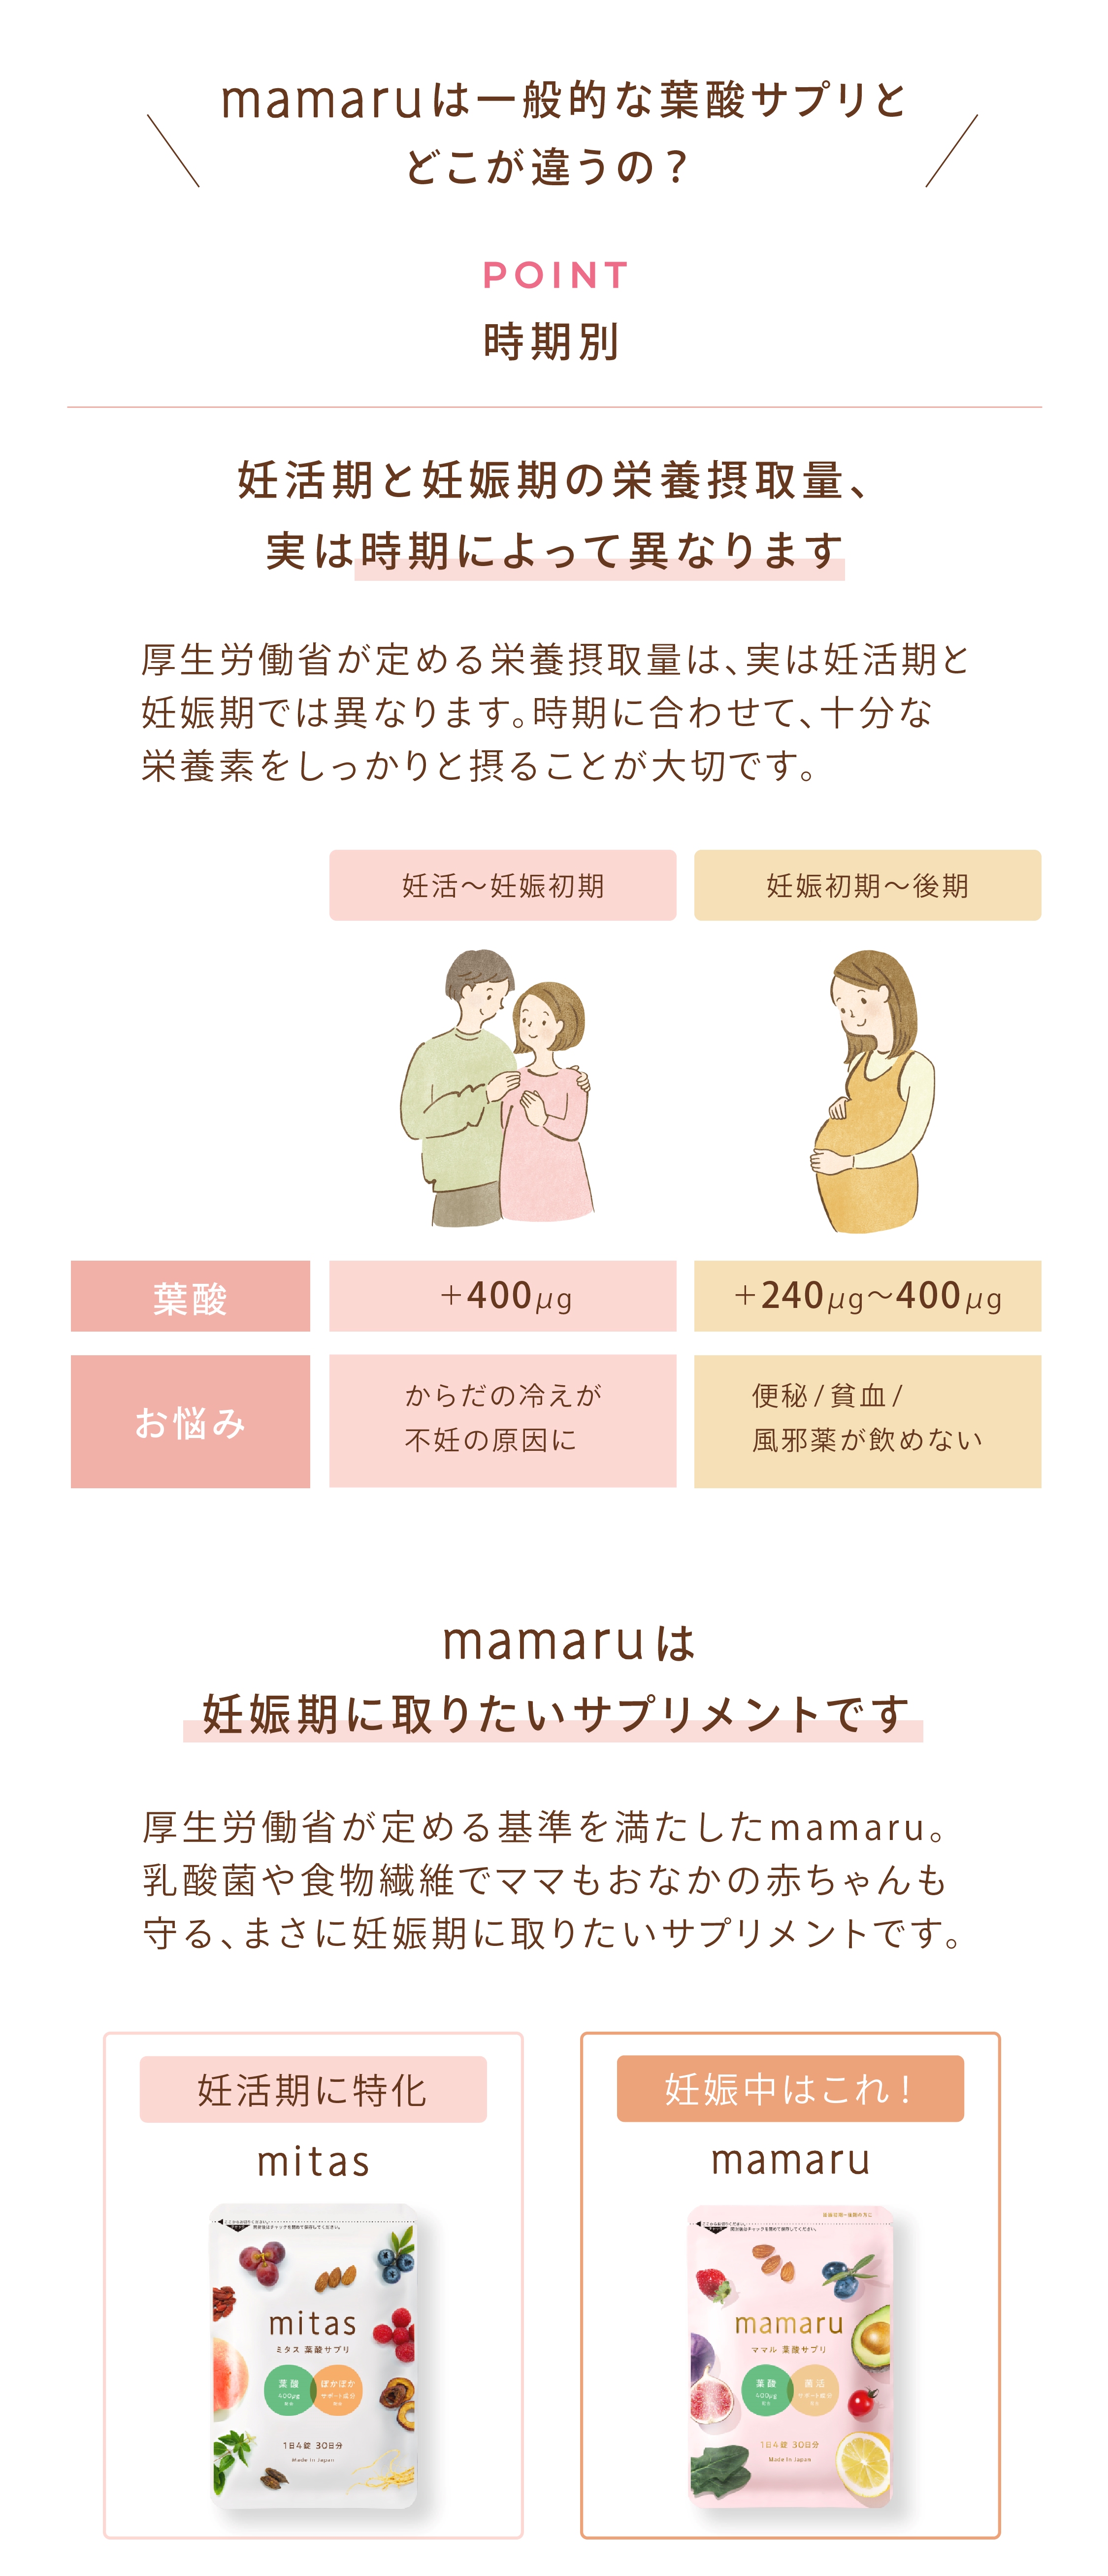 葉酸サプリ マタニティ mamaru 1袋 1か月分 妊娠中サプリ 妊娠中 葉酸